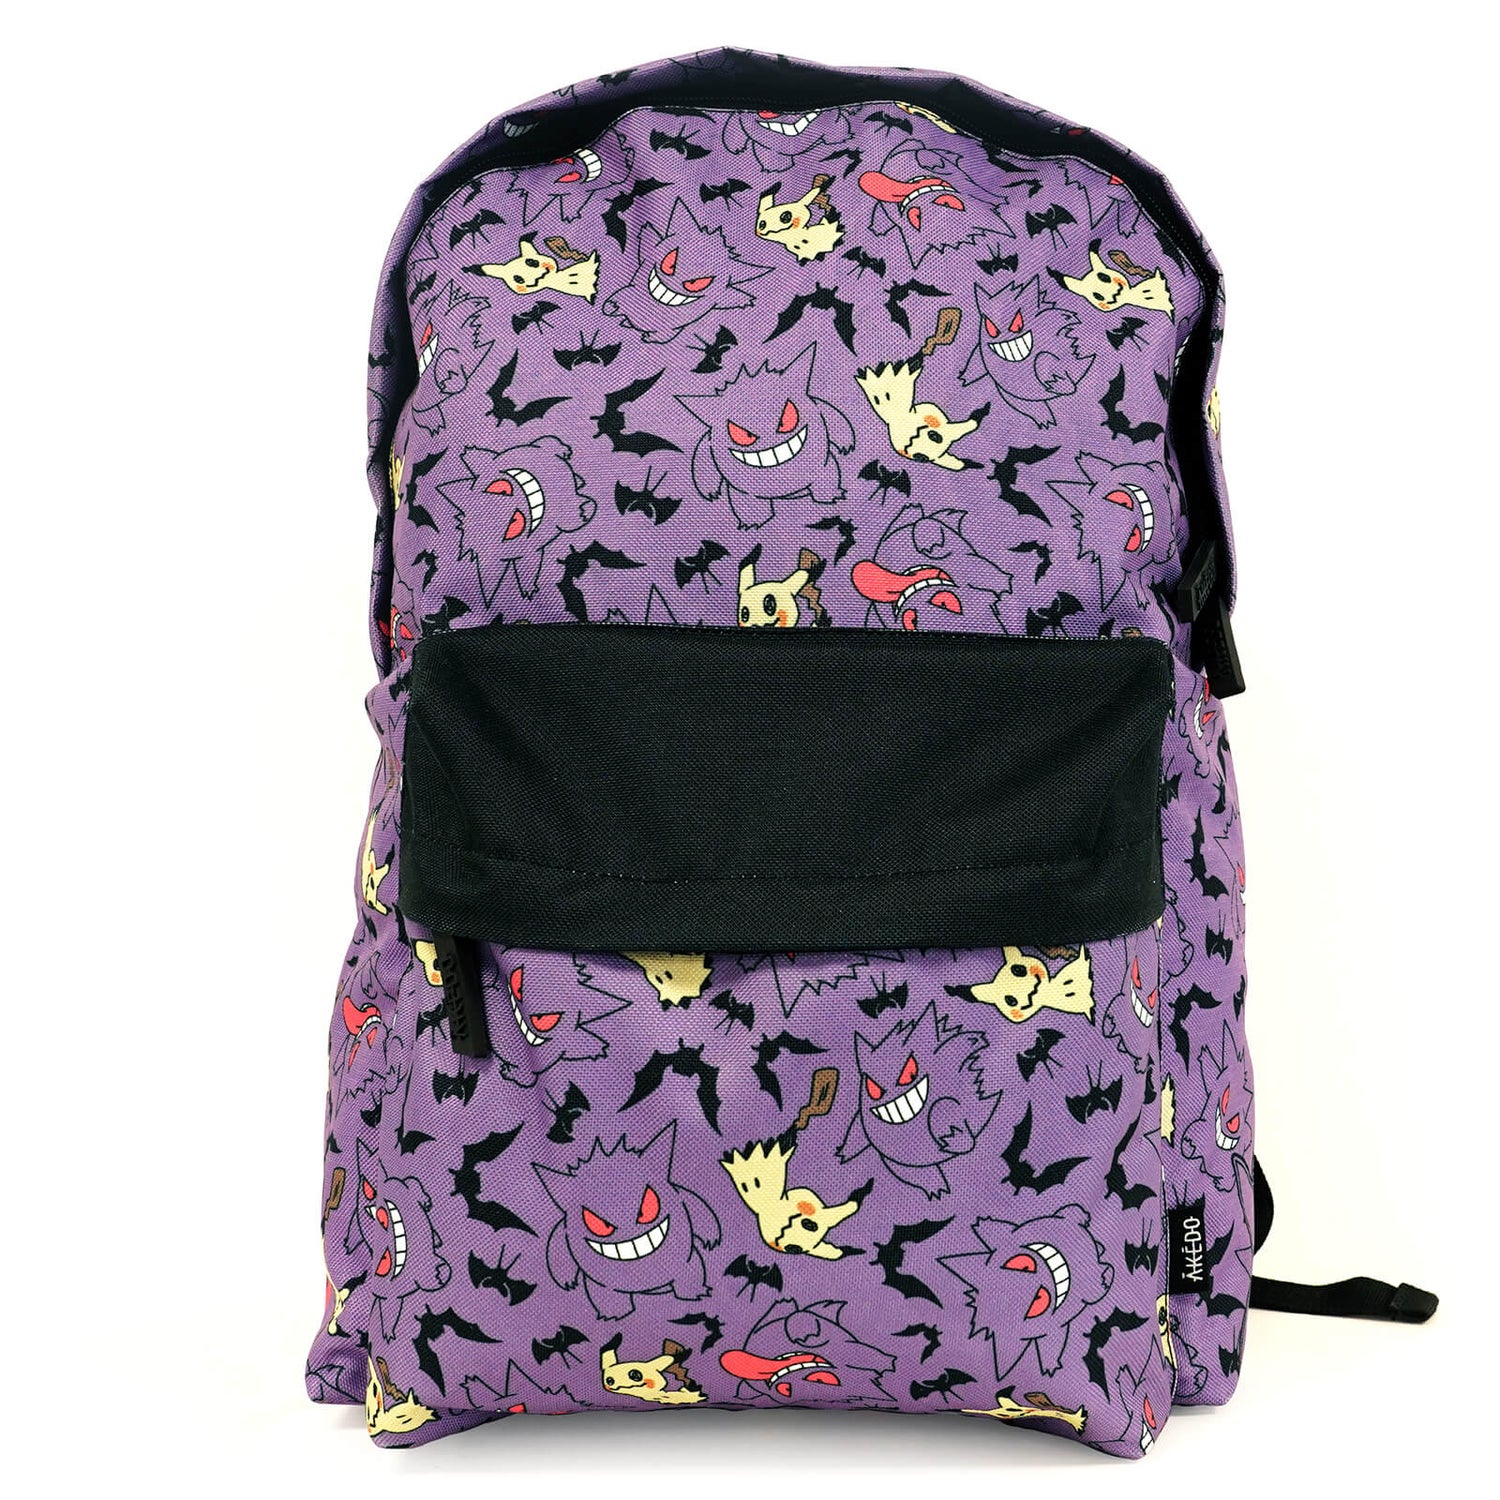 Pokémon Spookemon Backpack